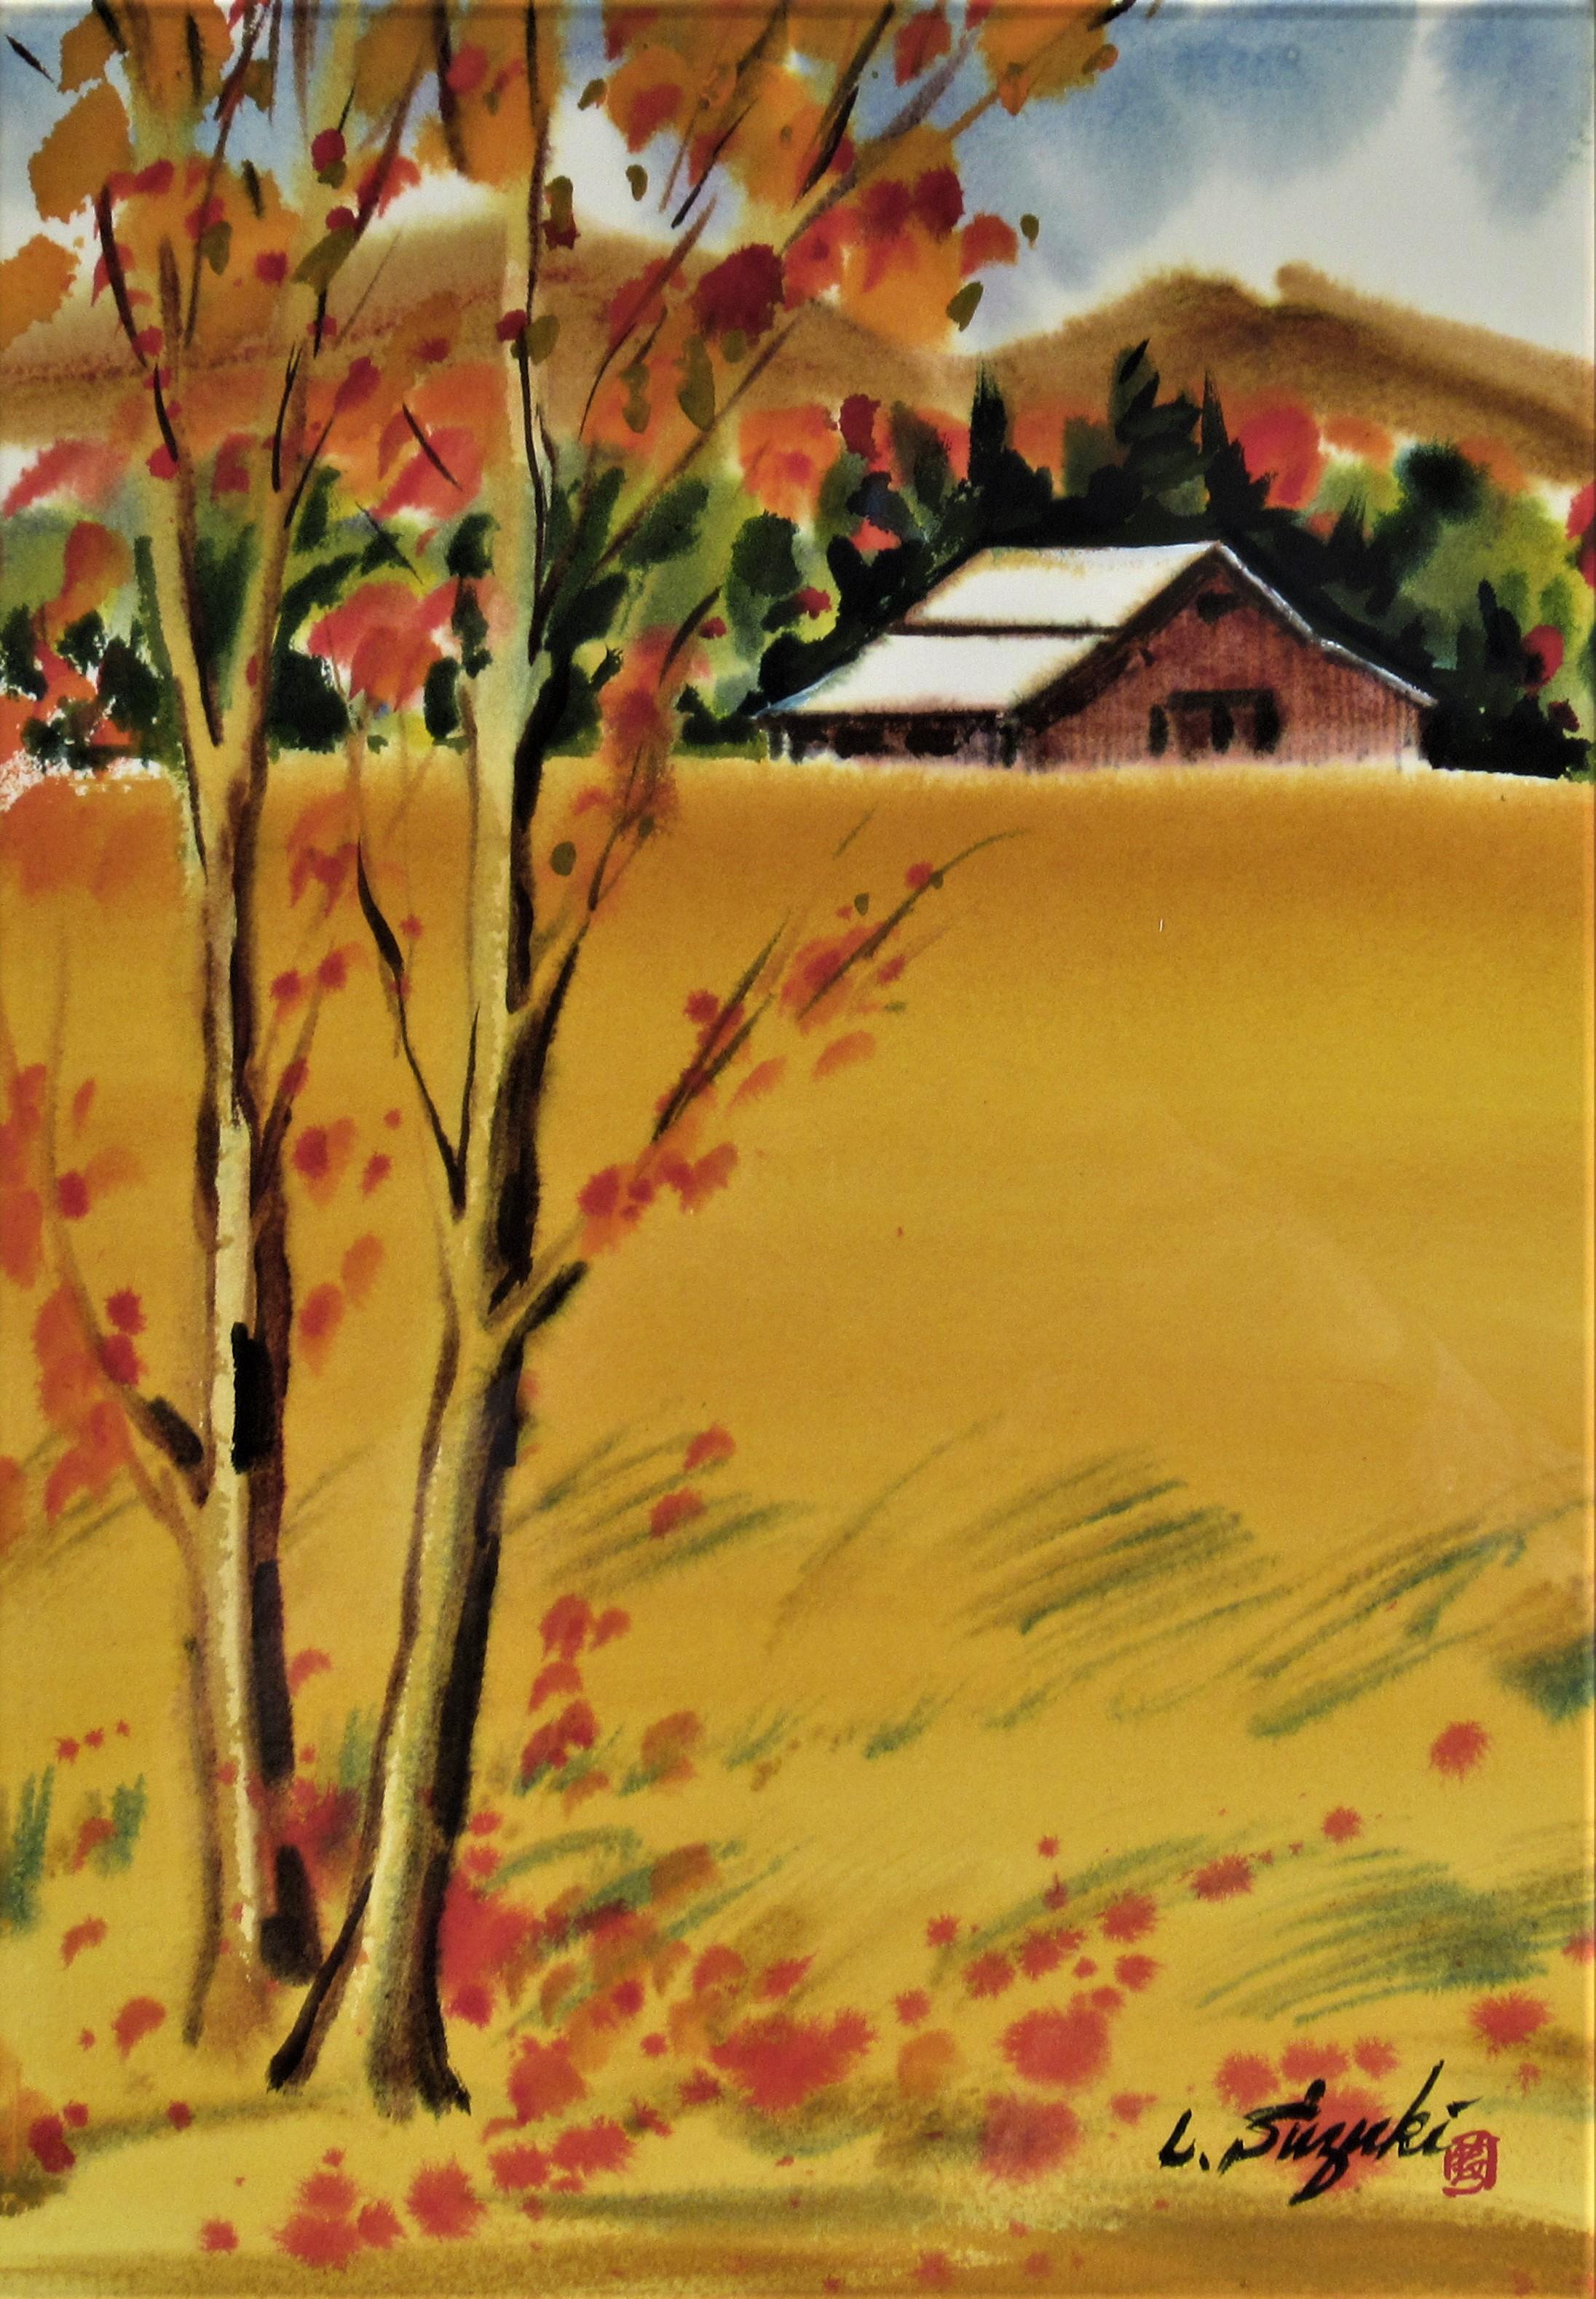 Landscape with Barn - Art by Lewis Suzuki